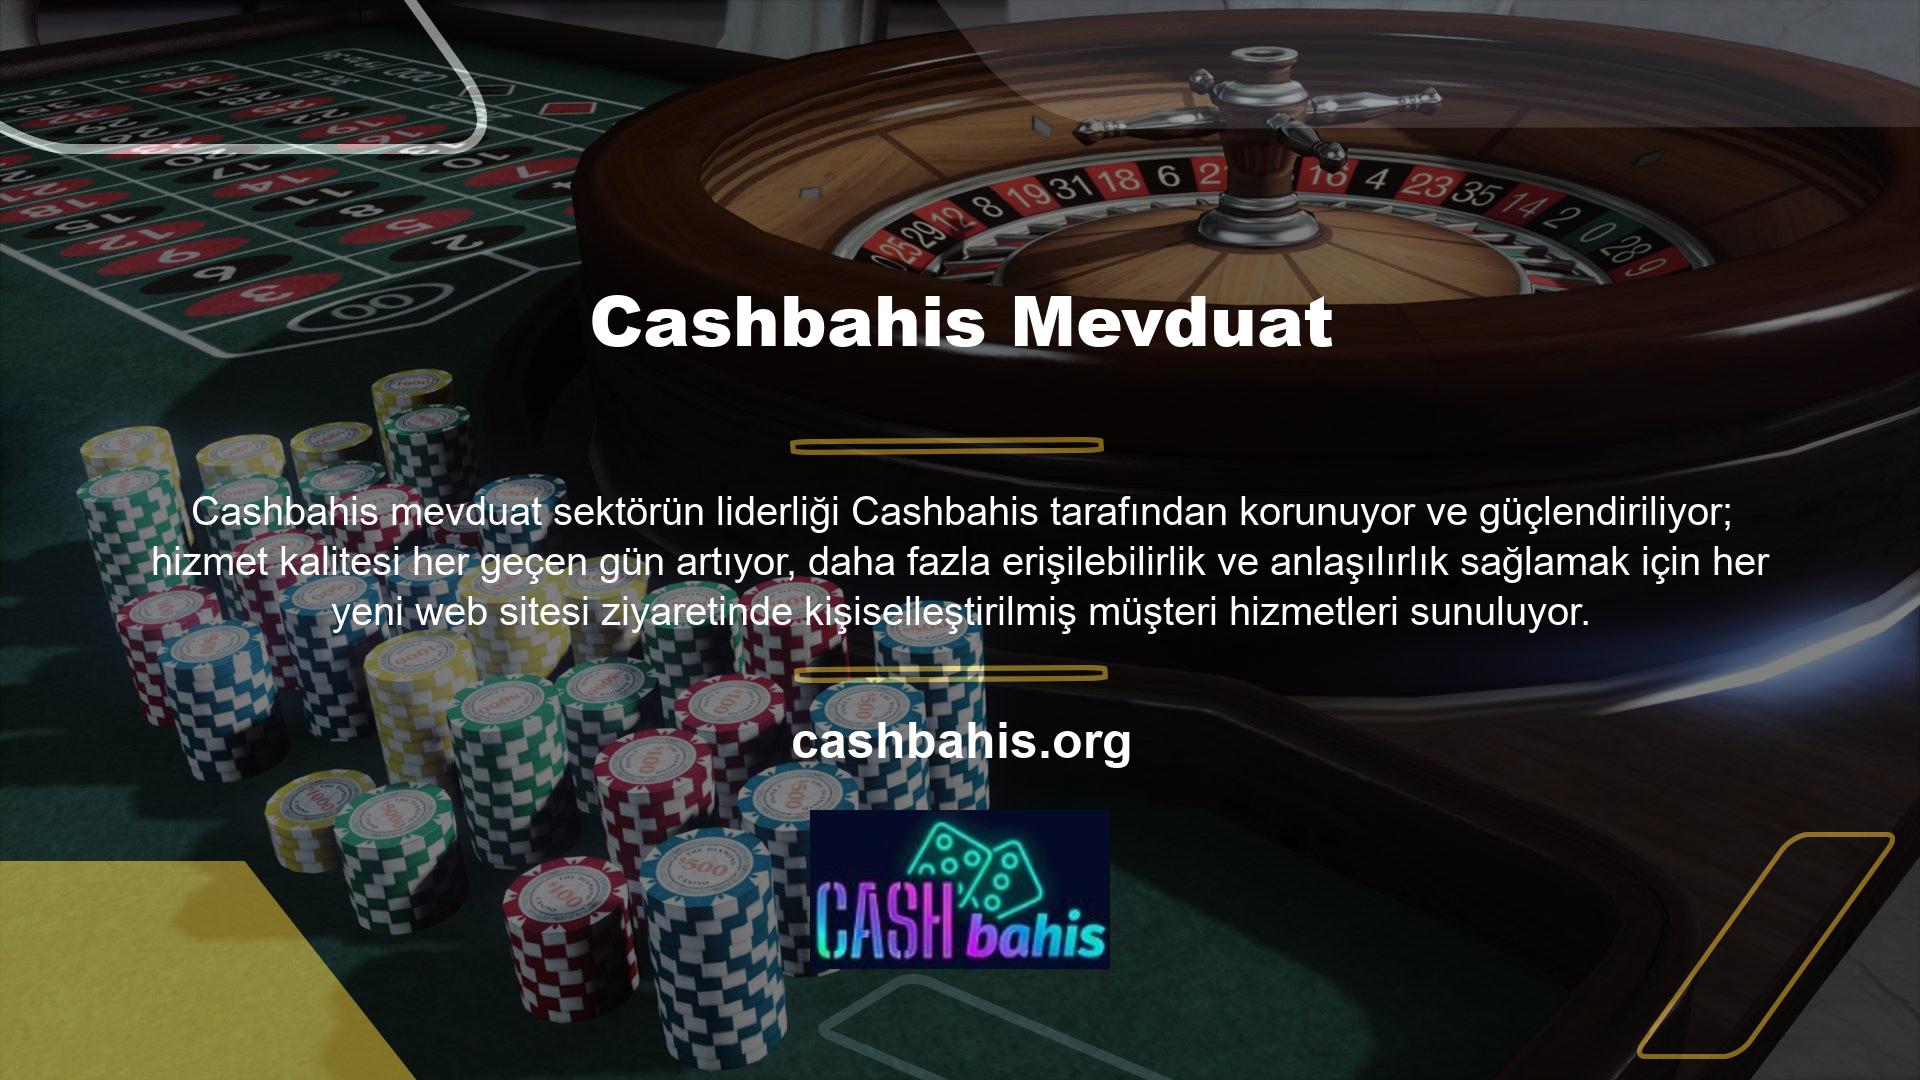 Kalite açısından Cashbahis sunduğu birinci sınıf hizmet, bahis, canlı casino ve slot oyunlarında örneklenmektedir